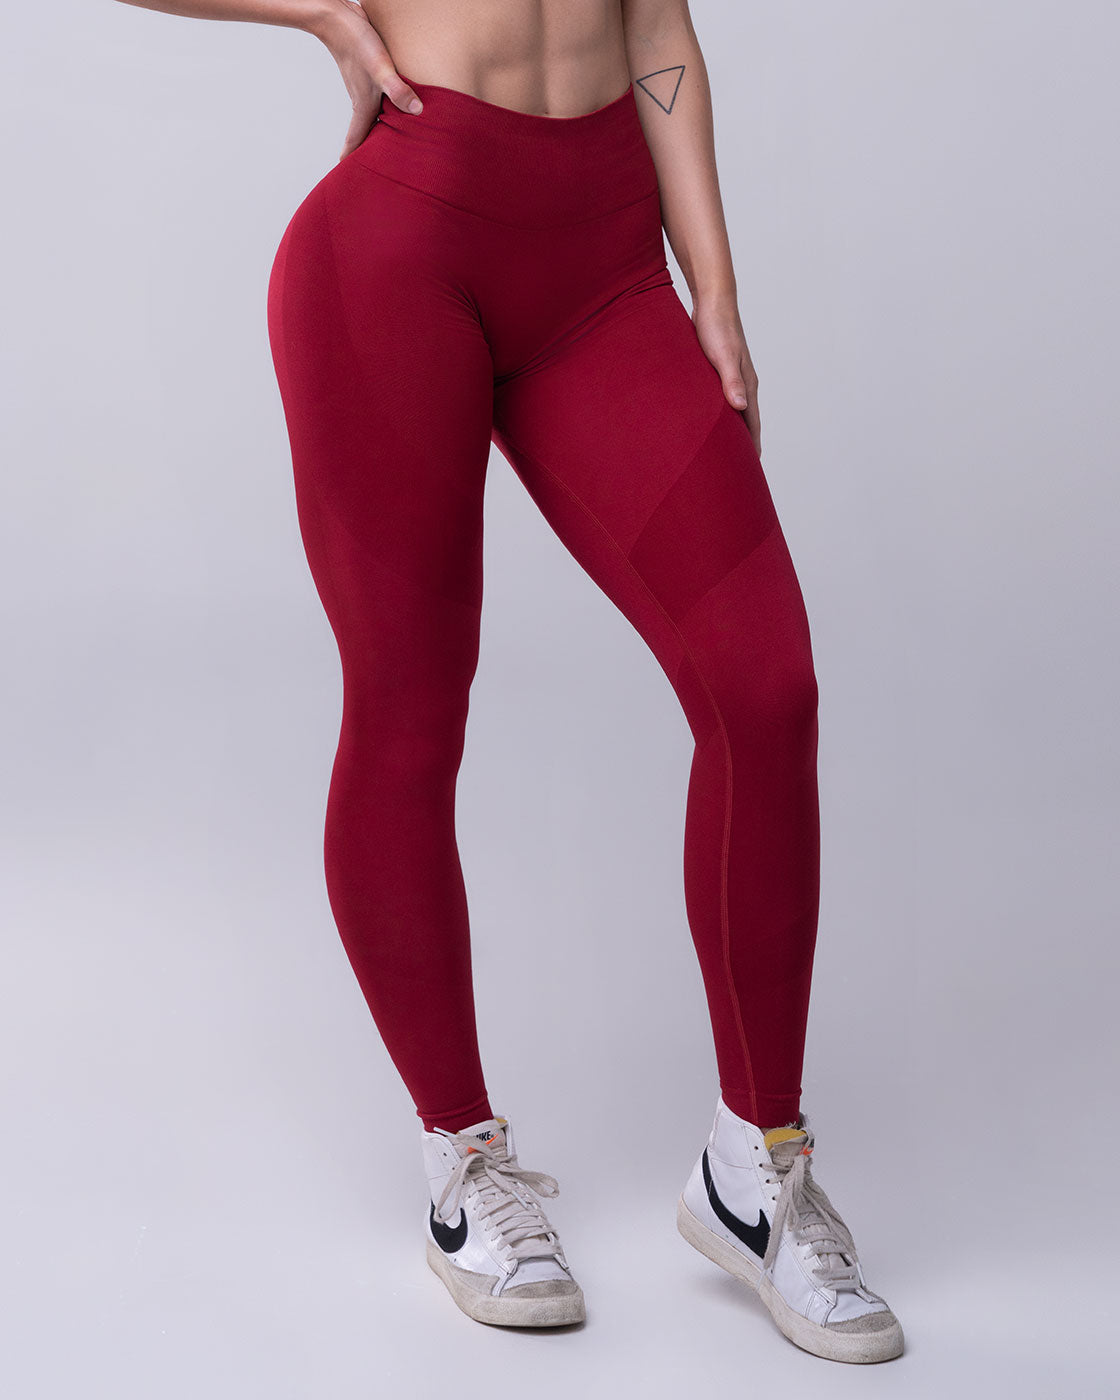 Cherry red ankle-length leggings - 3